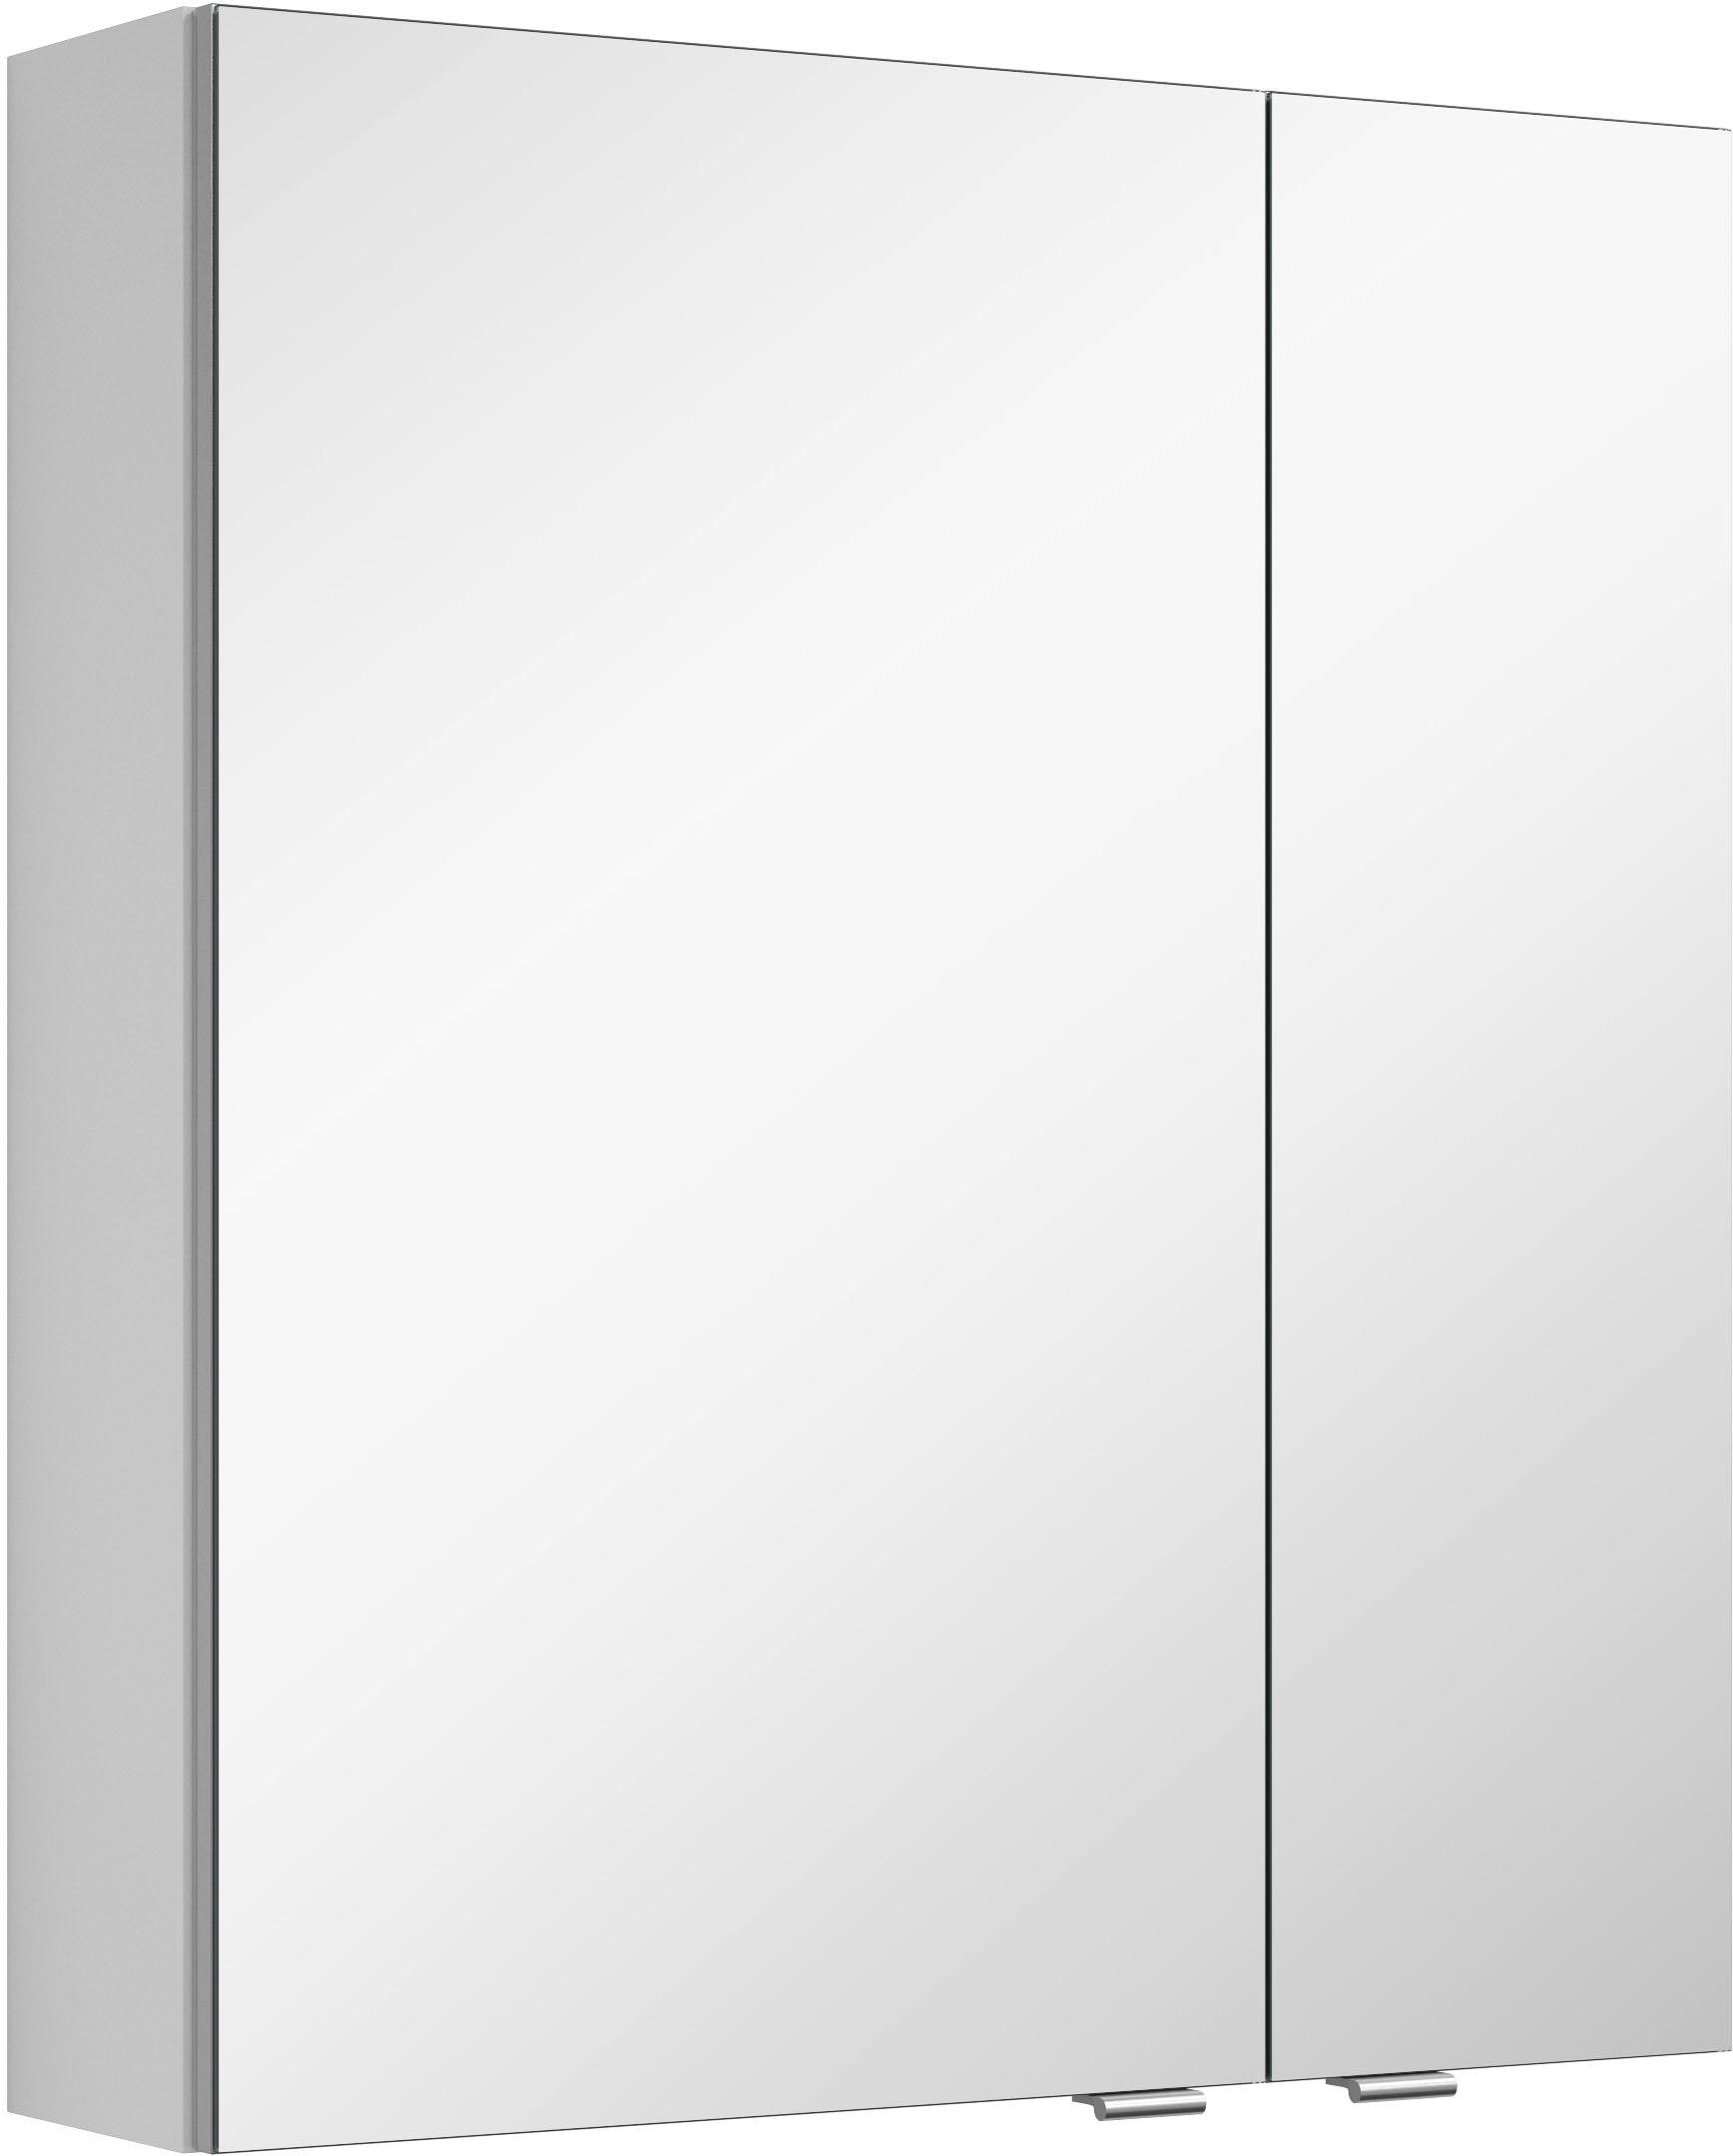 MARLIN Spiegelschrank »3980«, im jetzt Türen, doppelseitig verspiegelten %Sale vormontiert mit